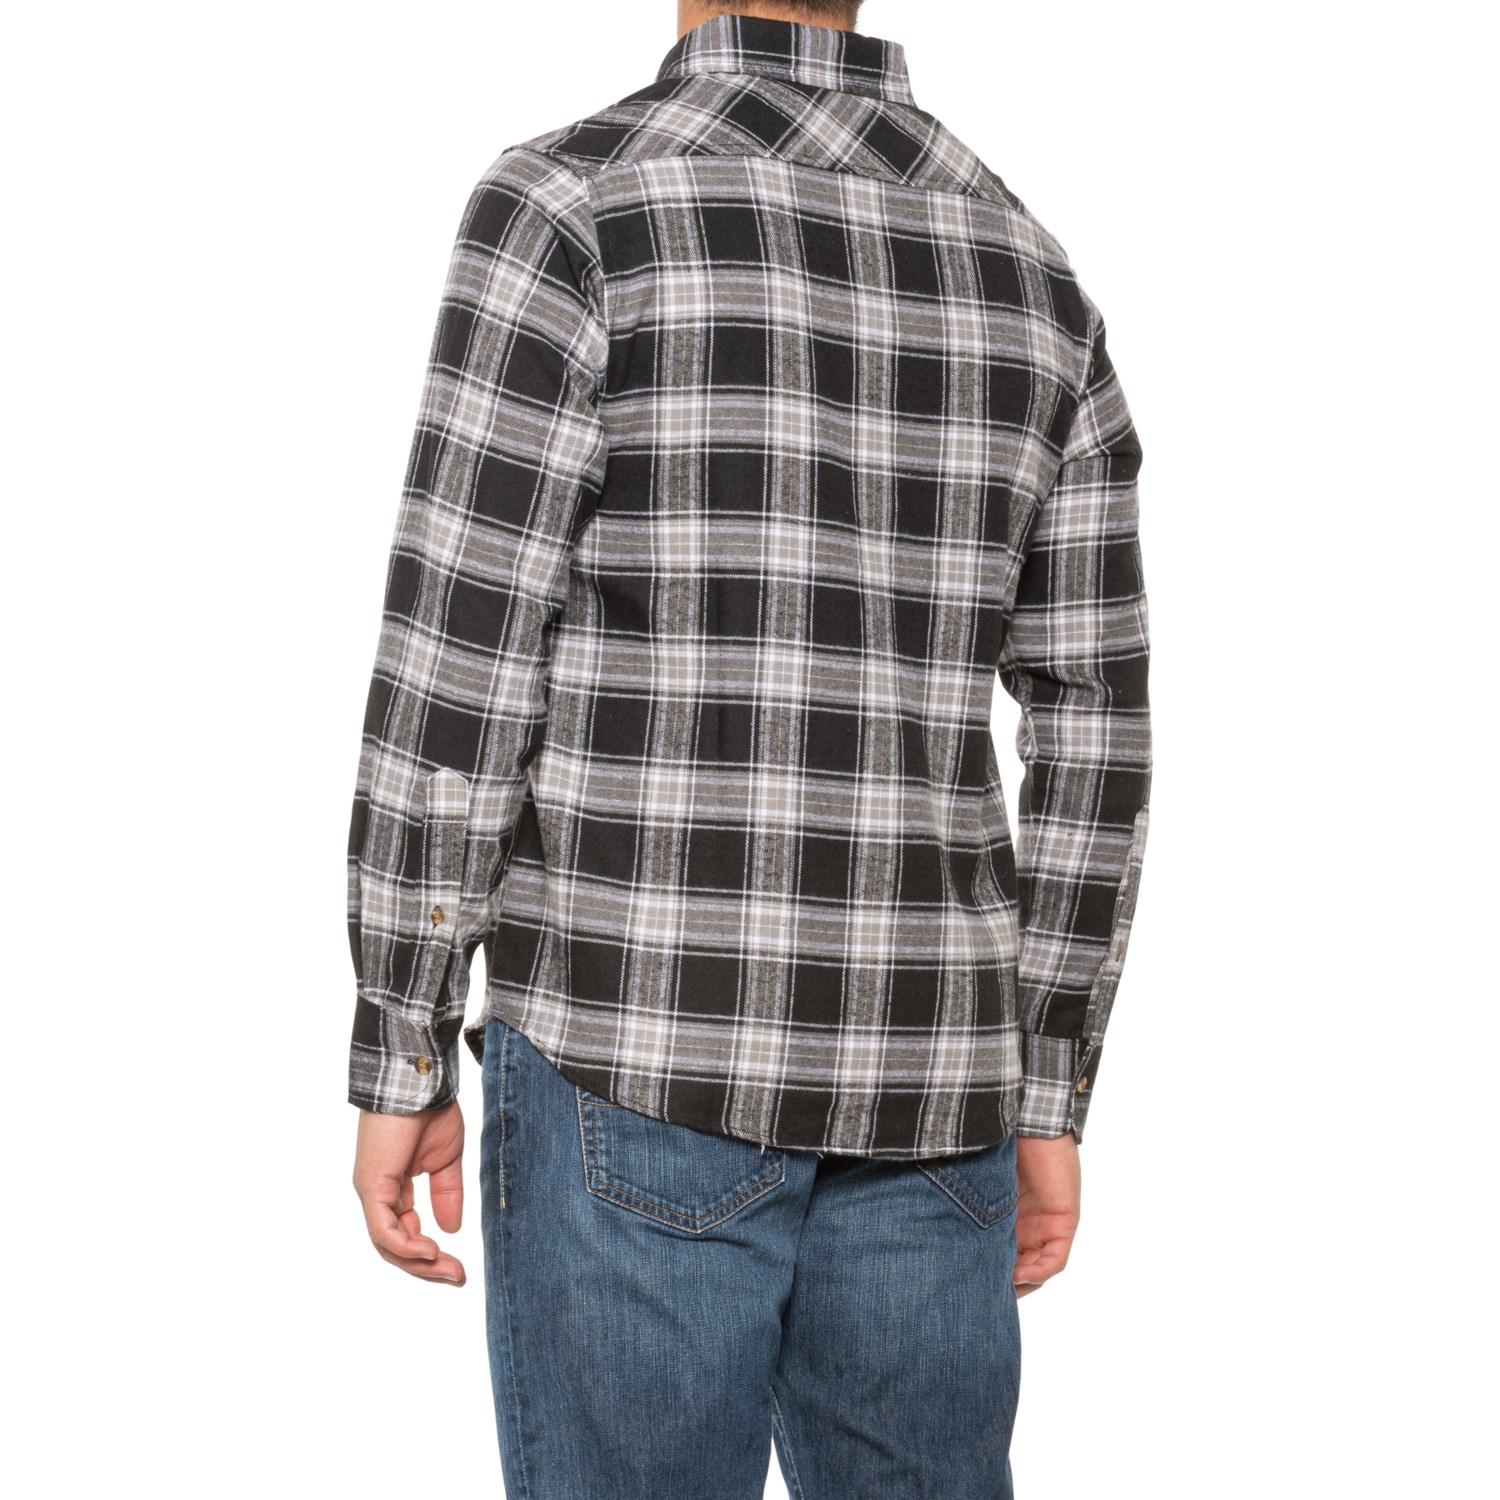 Cloudveil Plaid Beefy Flannel Shirt (For Men) - Save 50%